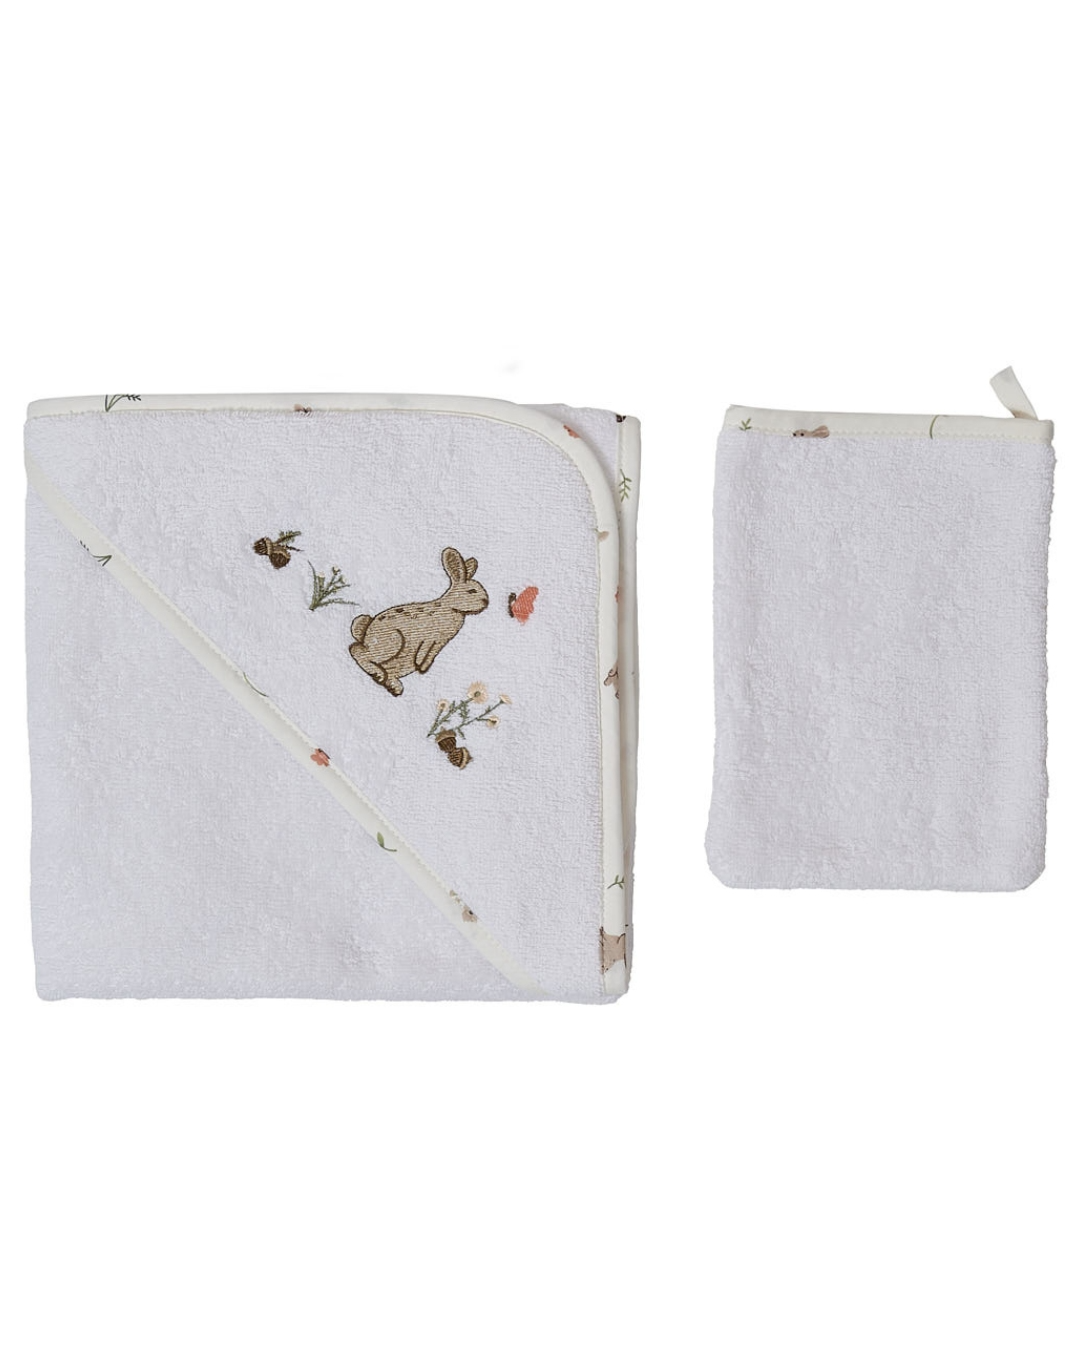 peskir za bebe bele boje cvetnog ruba sa motivom zeca na kapuljaci i rukavicom bele boje sa cvetnim rubom